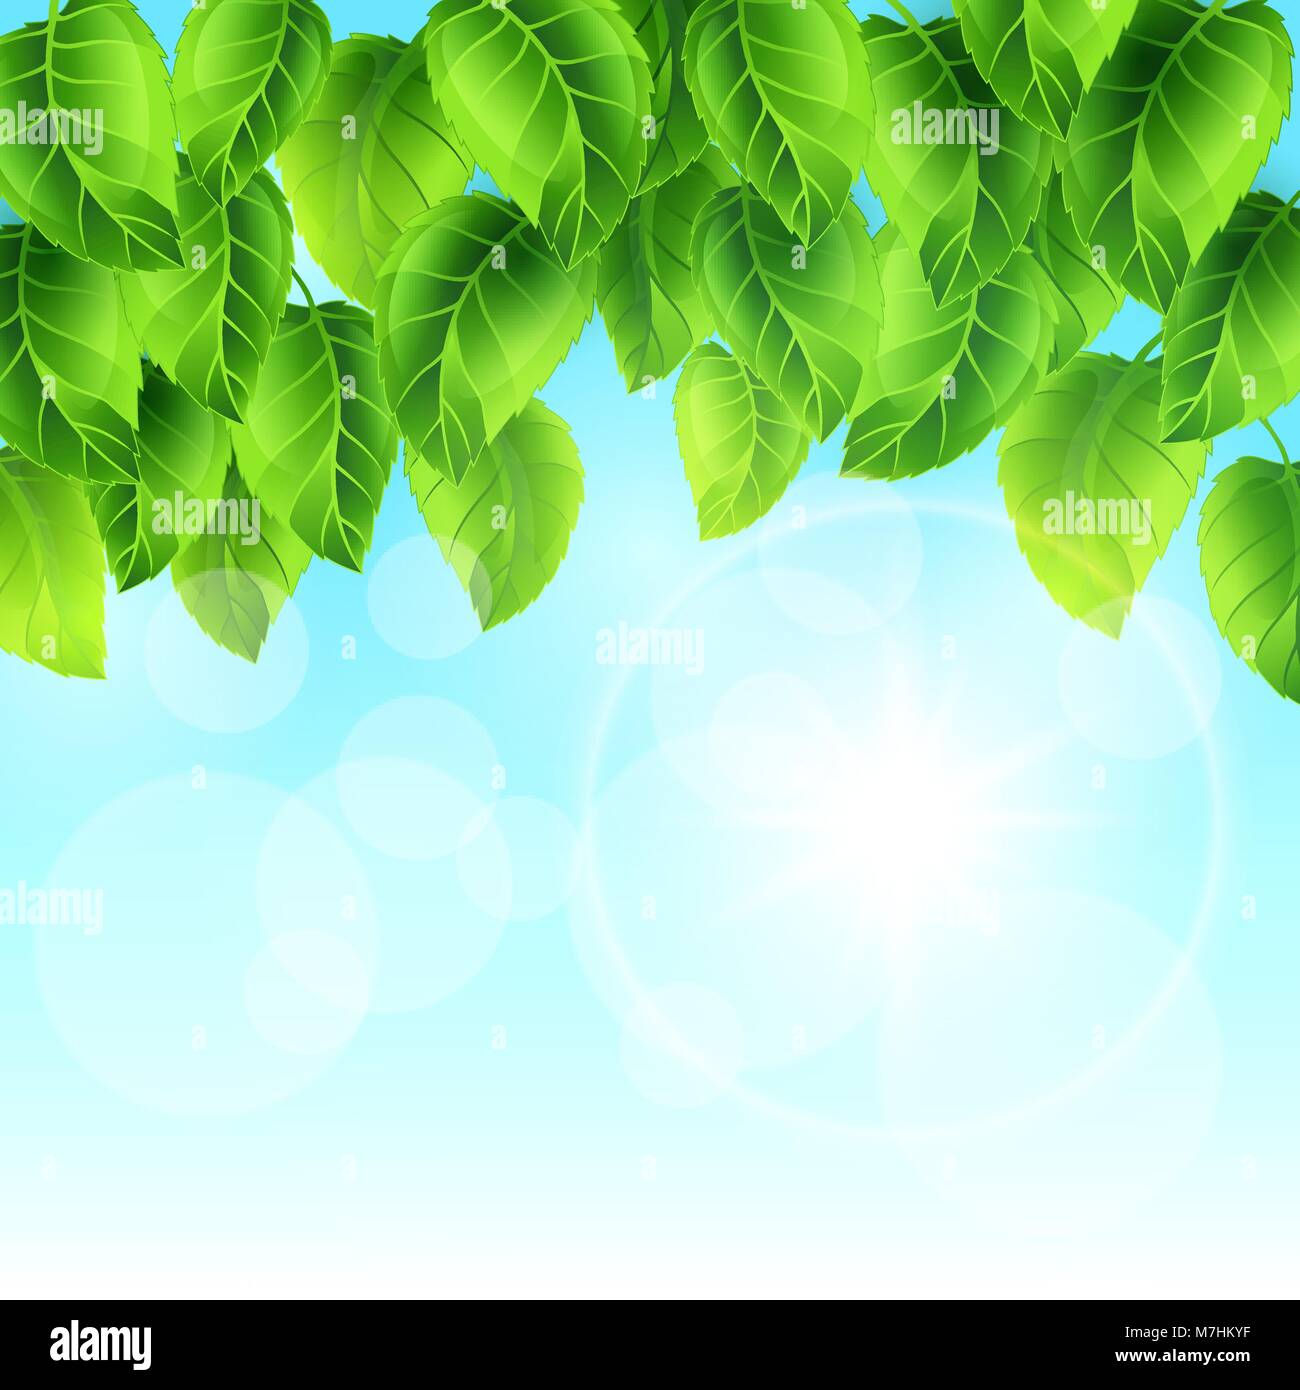 Feder Abbildung mit grünen Blättern auf Sky. Karte Vorlage floral Design für Verpackung, Grußkarten und Werbung Stock Vektor